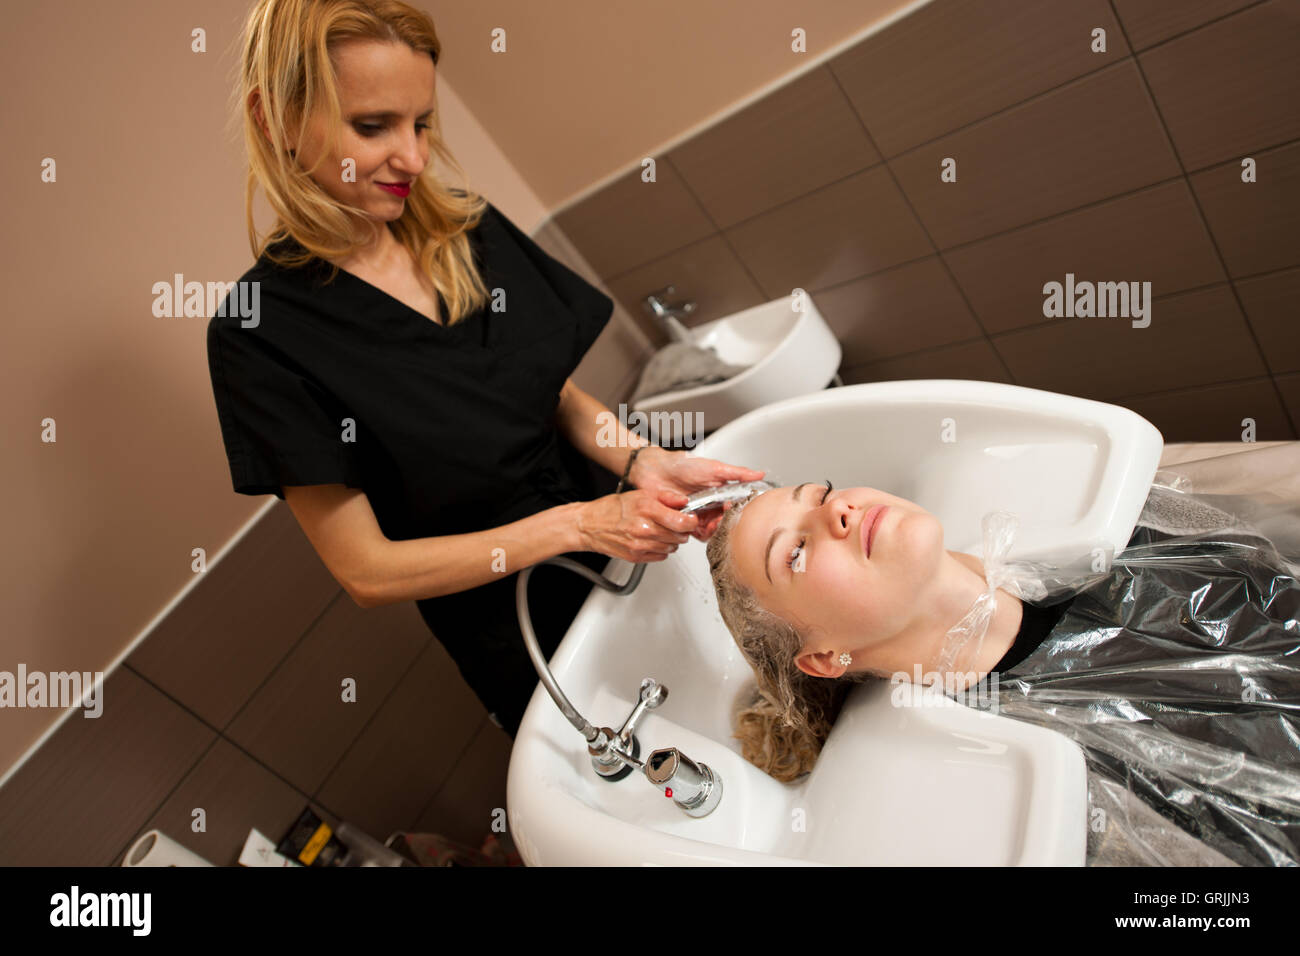 Friseur am Arbeitsplatz - Friseur waschen Haare an den Kunden zuvor Frisur Stockfoto